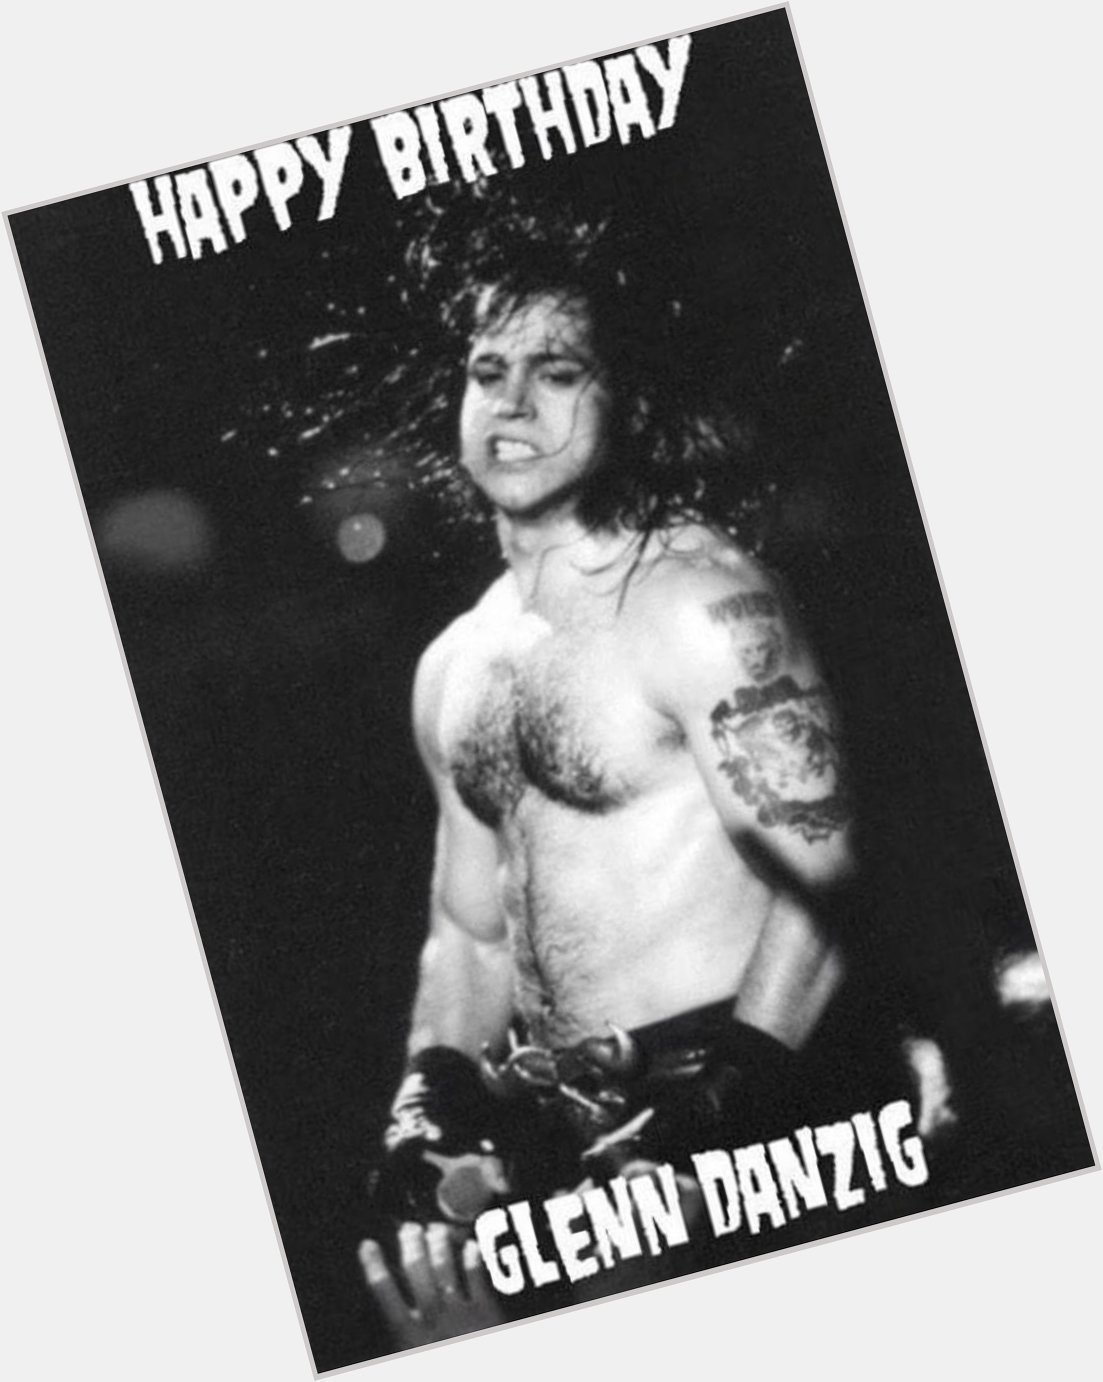 Happy birthday to Lodi NJ s favorite son, Glenn Danzig 